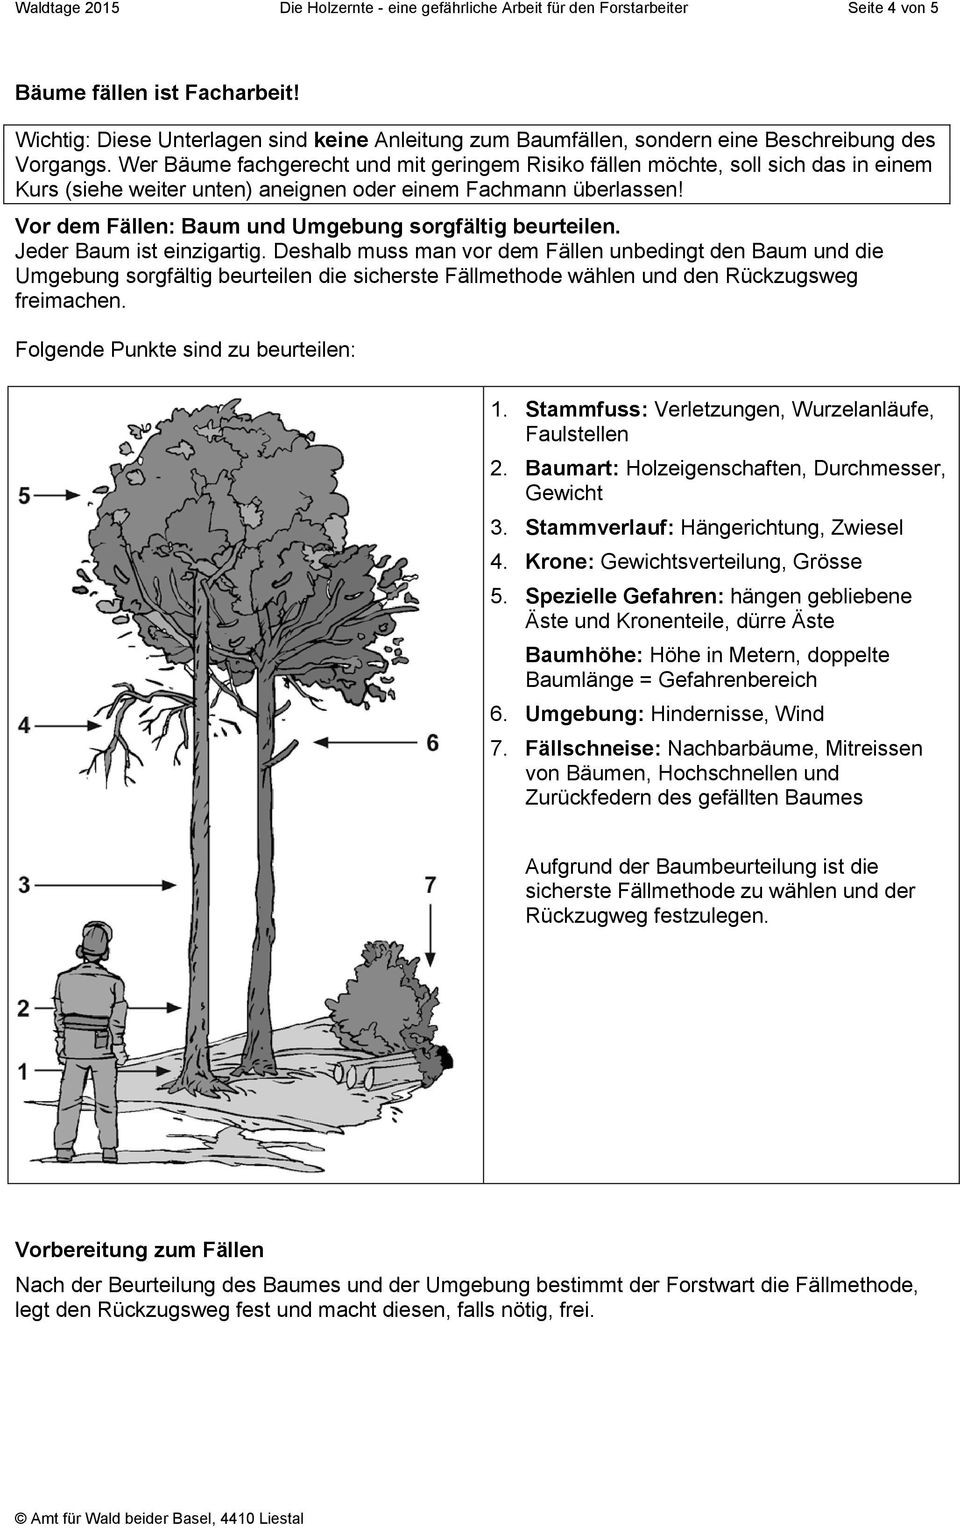 Wer Bäume fachgerecht und mit geringem Risiko fällen möchte, soll sich das in einem Kurs (siehe weiter unten) aneignen oder einem Fachmann überlassen!